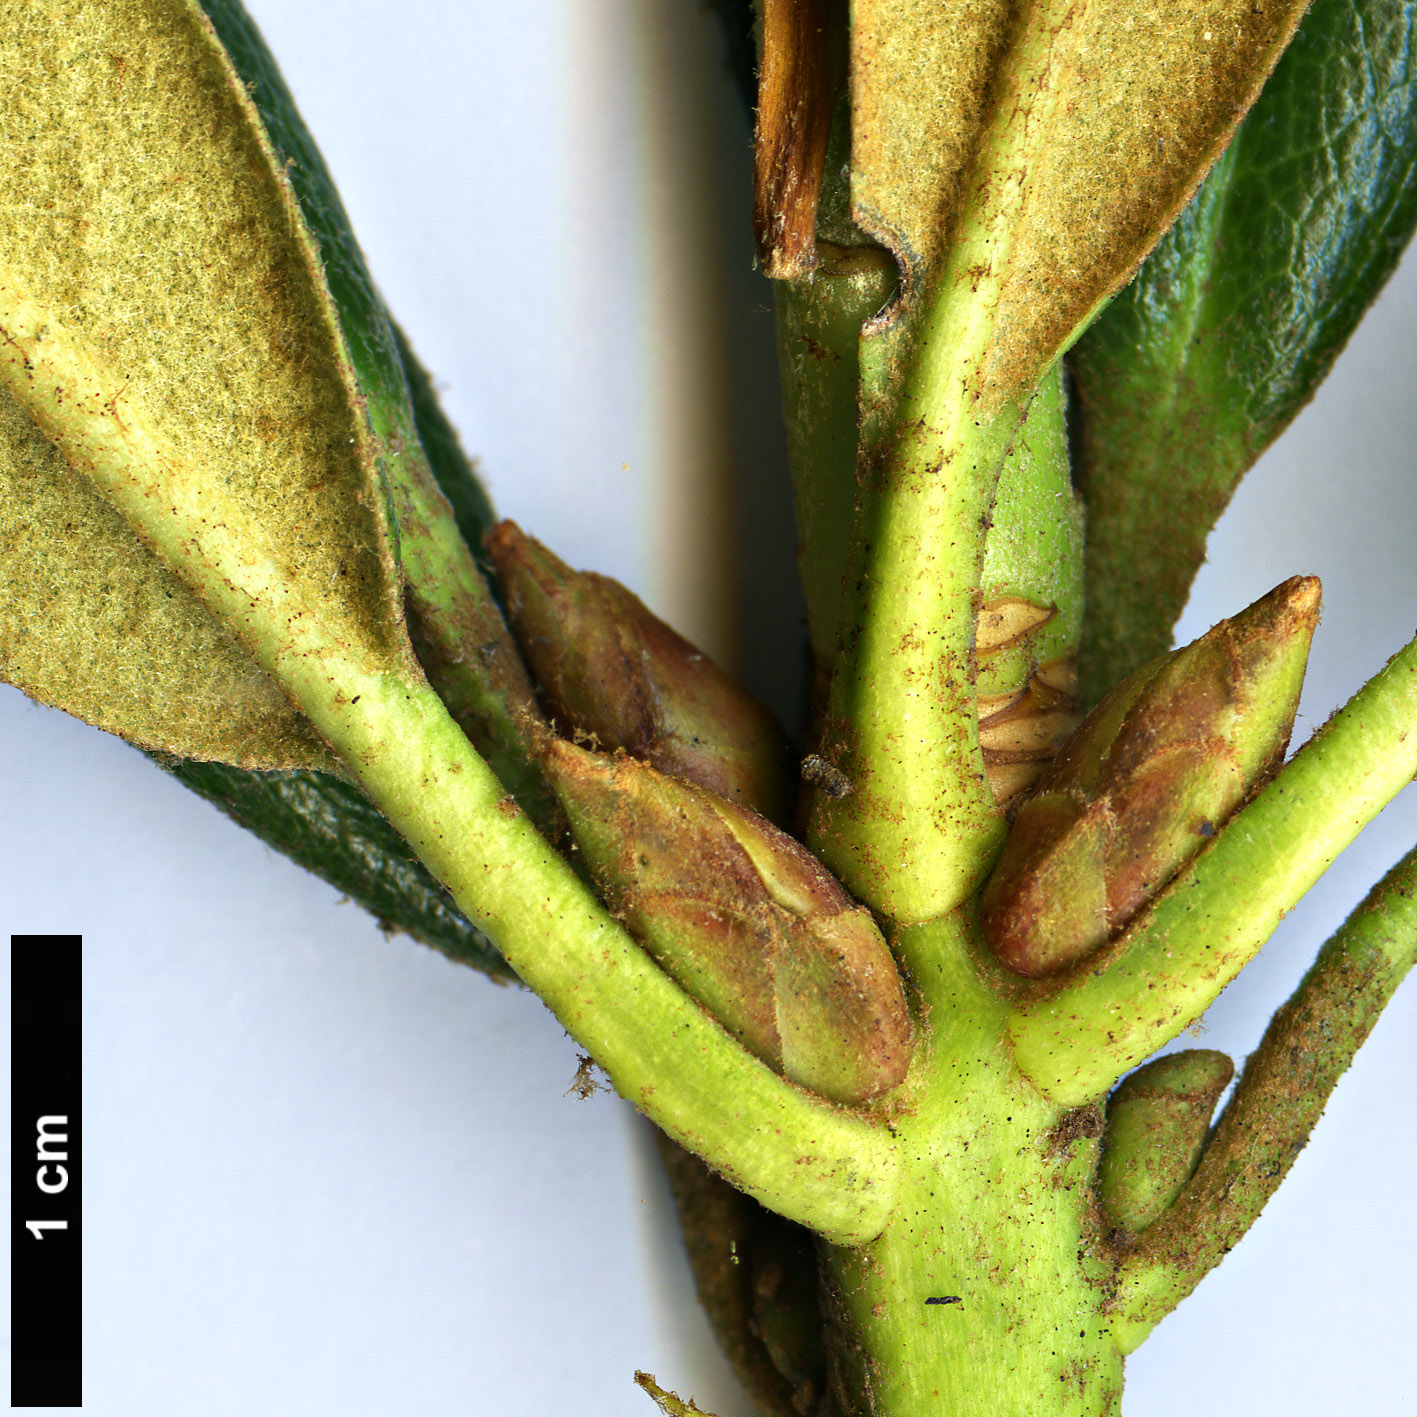 High resolution image: Family: Ericaceae - Genus: Rhododendron - Taxon: alutaceum - SpeciesSub: var. russotinctum Triplonaevium Group